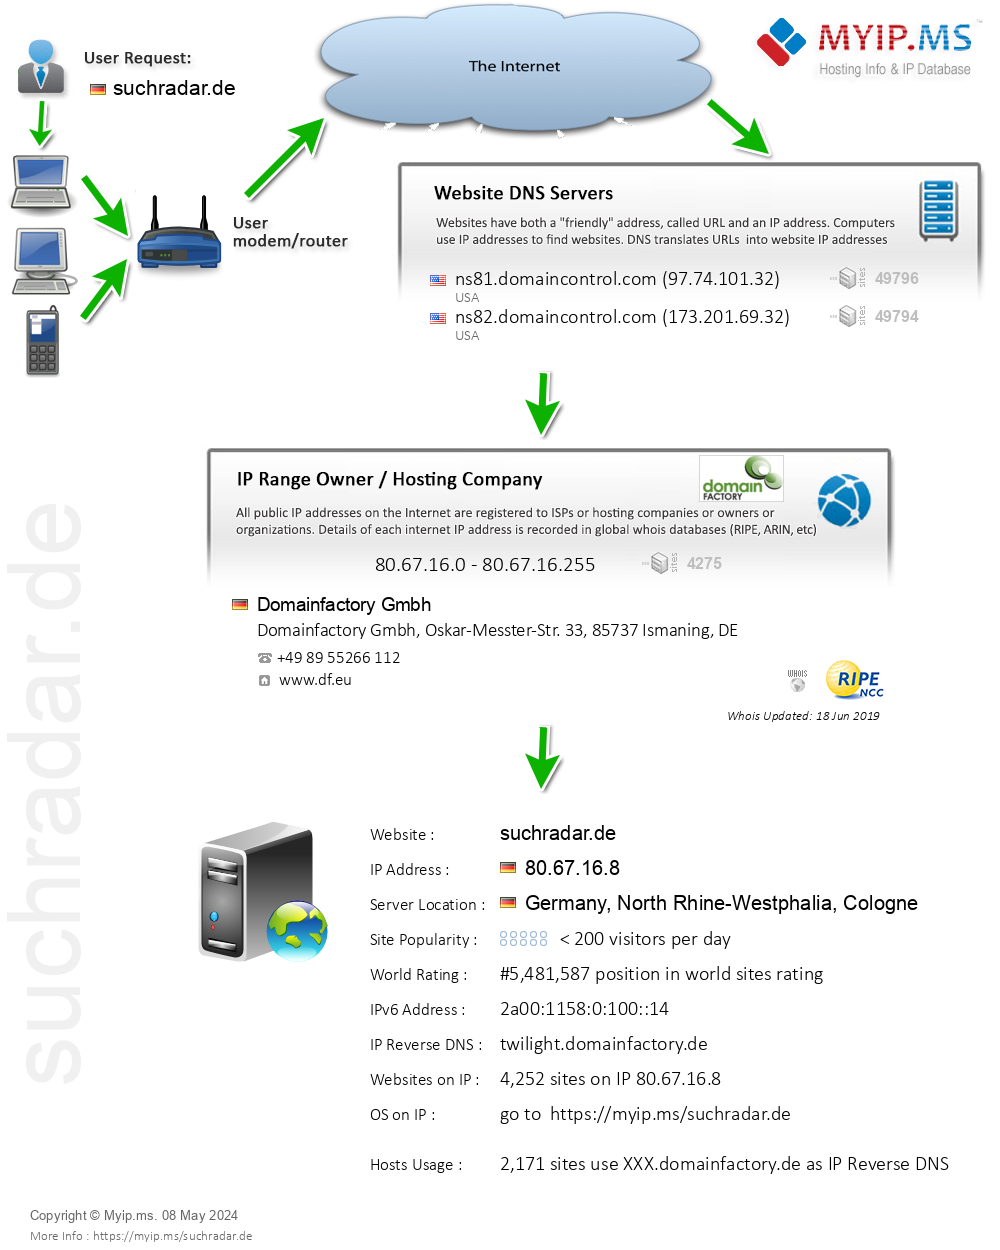 Suchradar.de - Website Hosting Visual IP Diagram